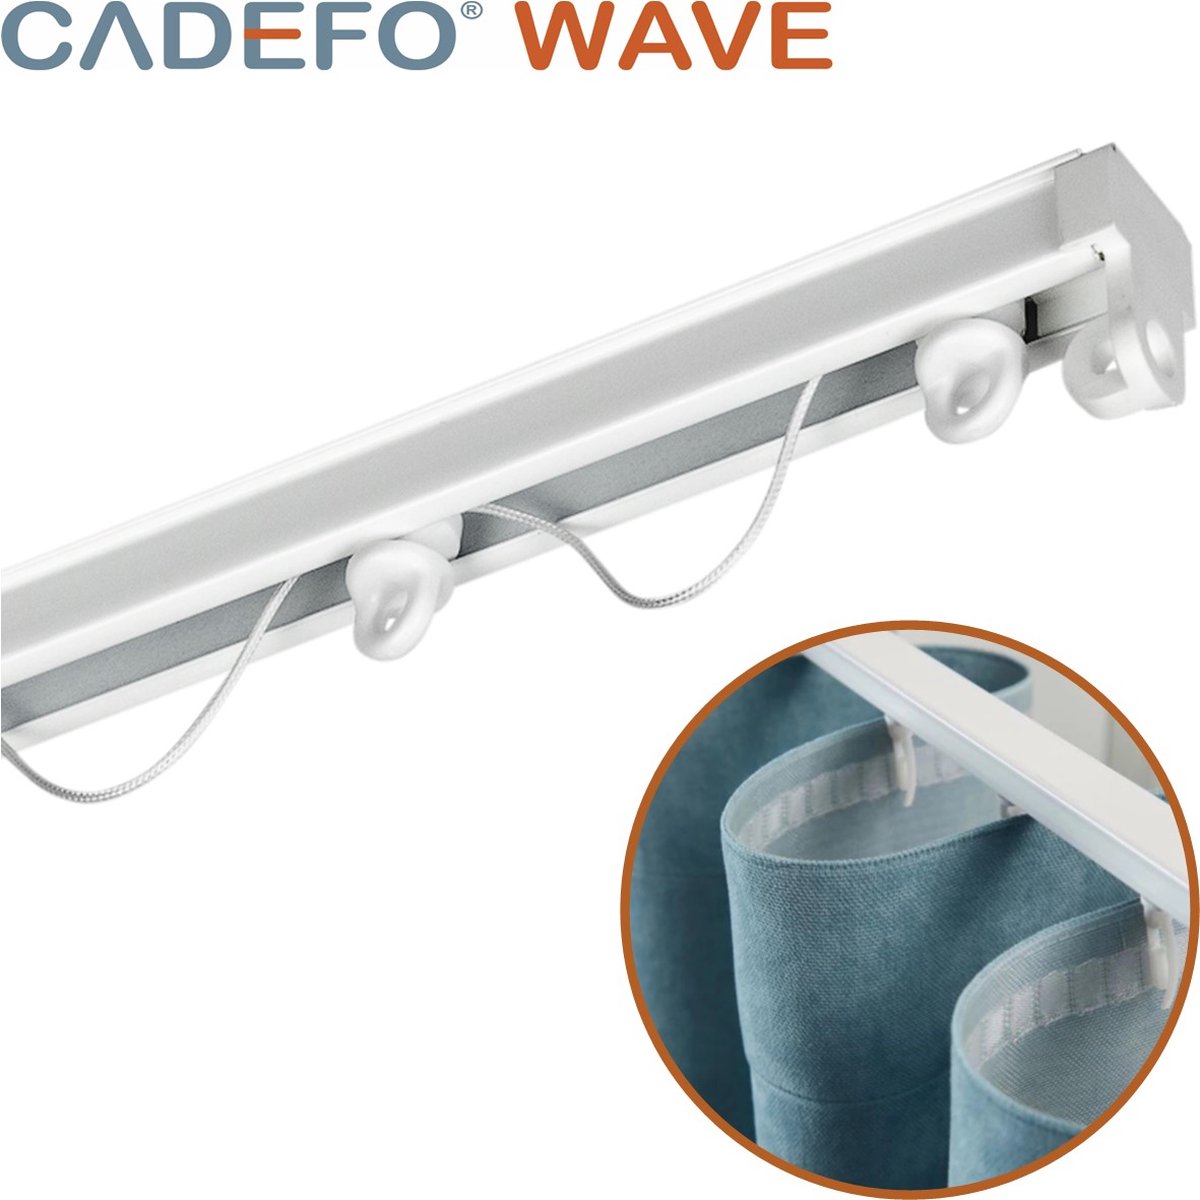 CADEFO WAVE (301 - 350 cm) Gordijnrails - Compleet op maat! - UIT 1 STUK - Leverbaar tot 6 meter - Plafondbevestiging - Lengte 343 cm